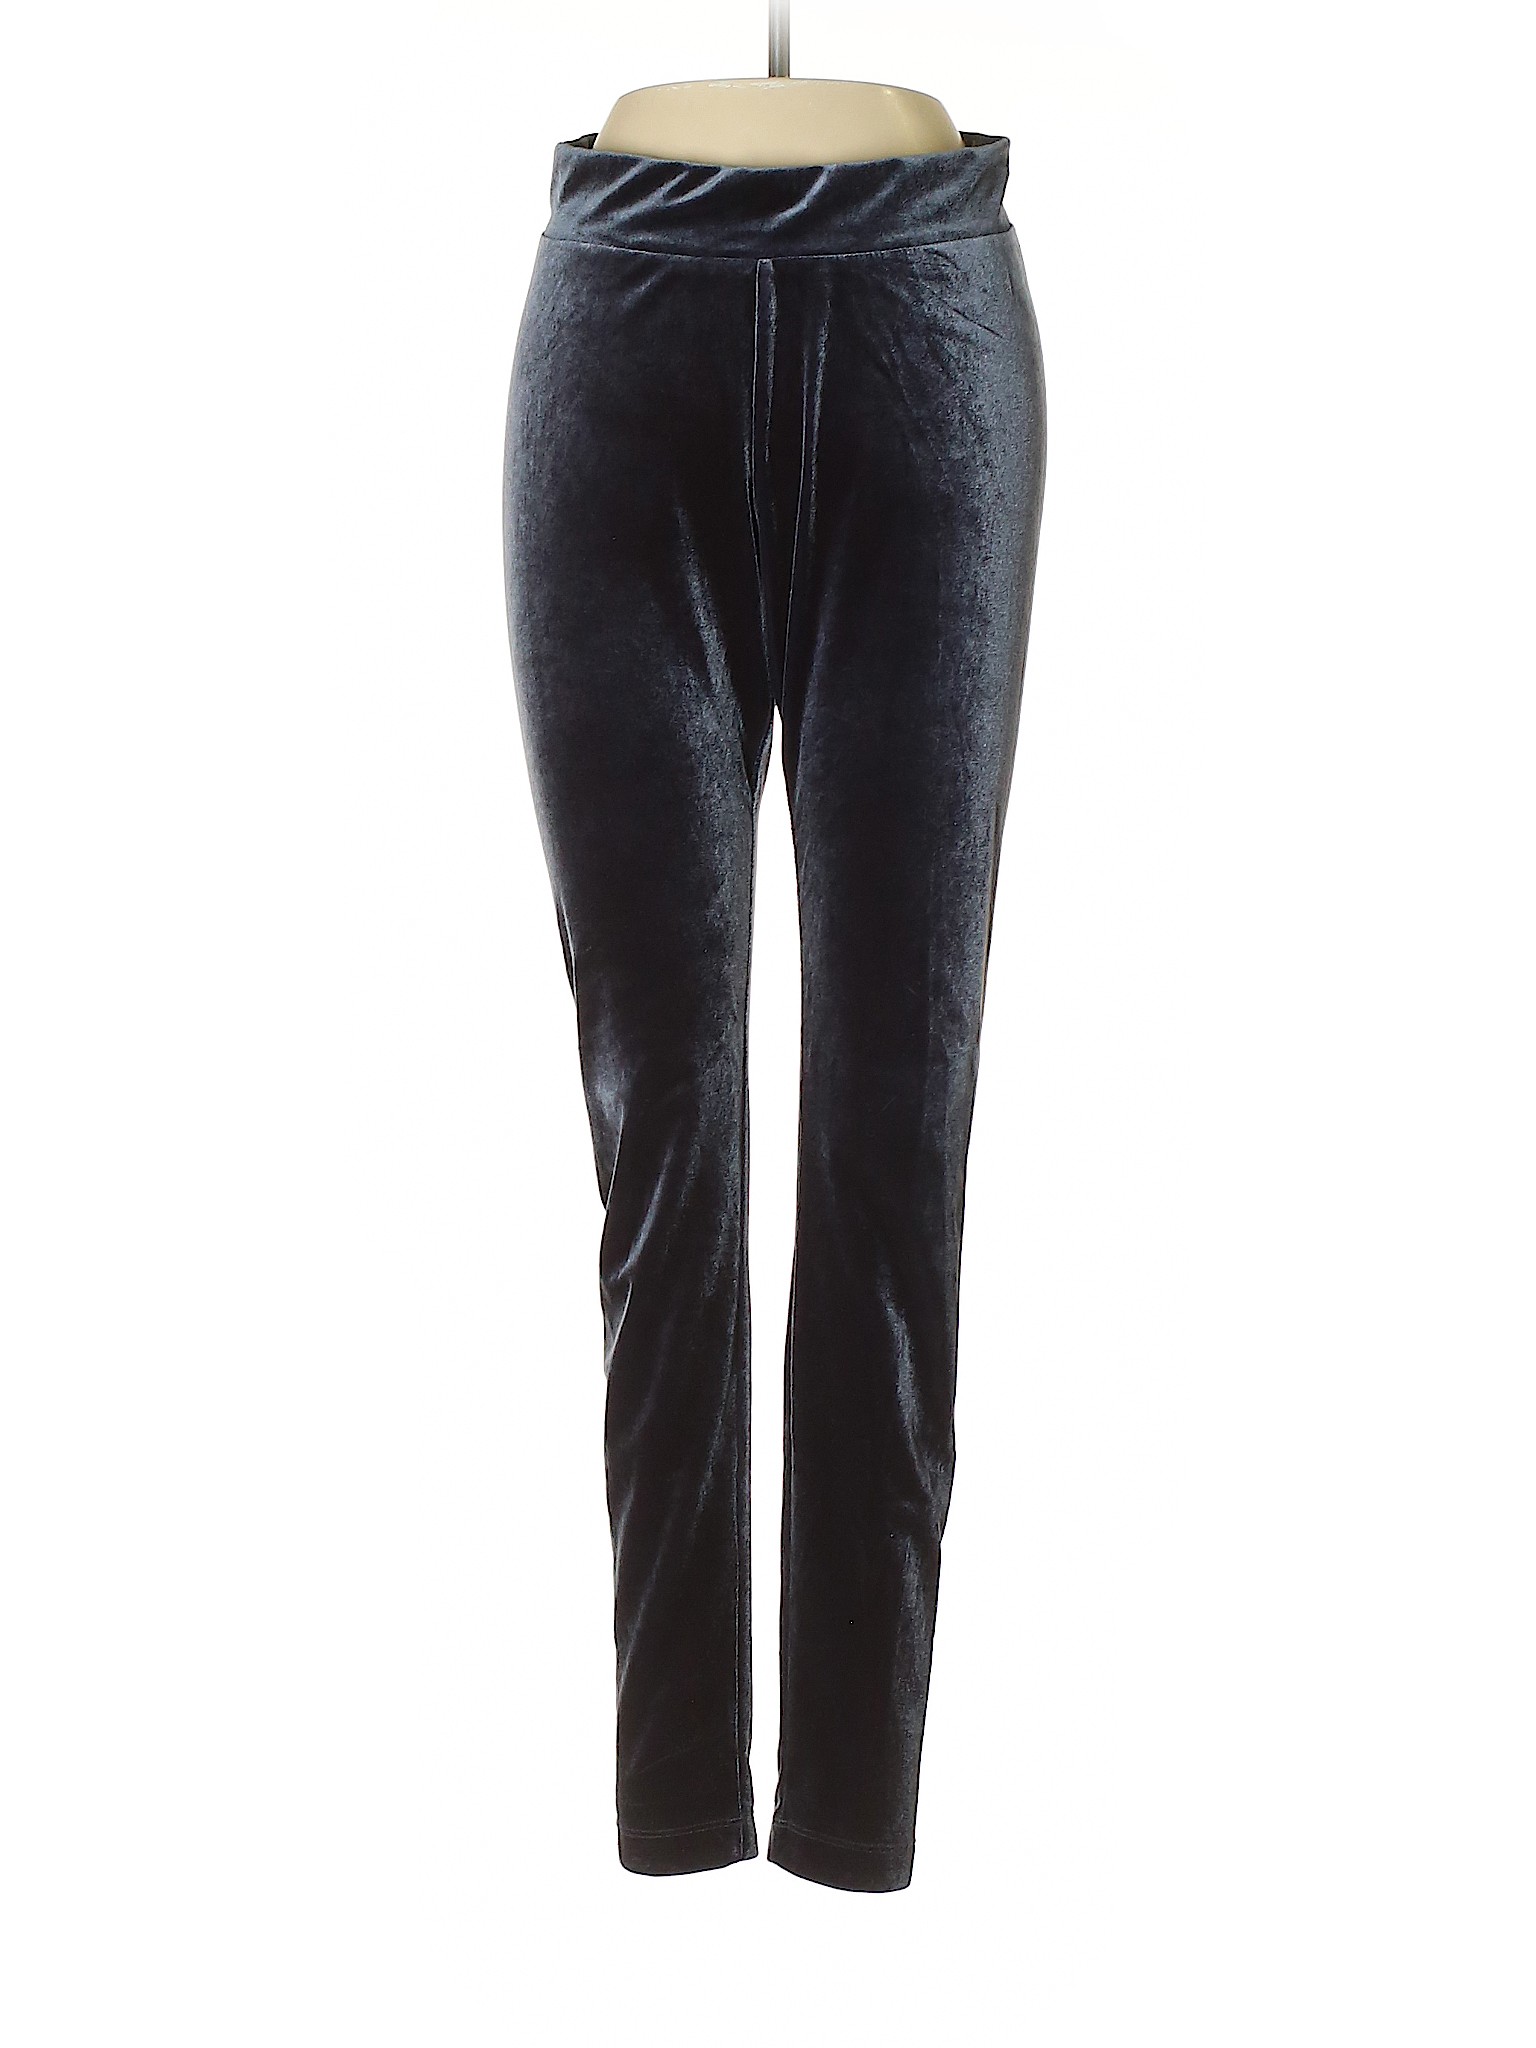 Old Navy Women Black Velour Pants S | eBay